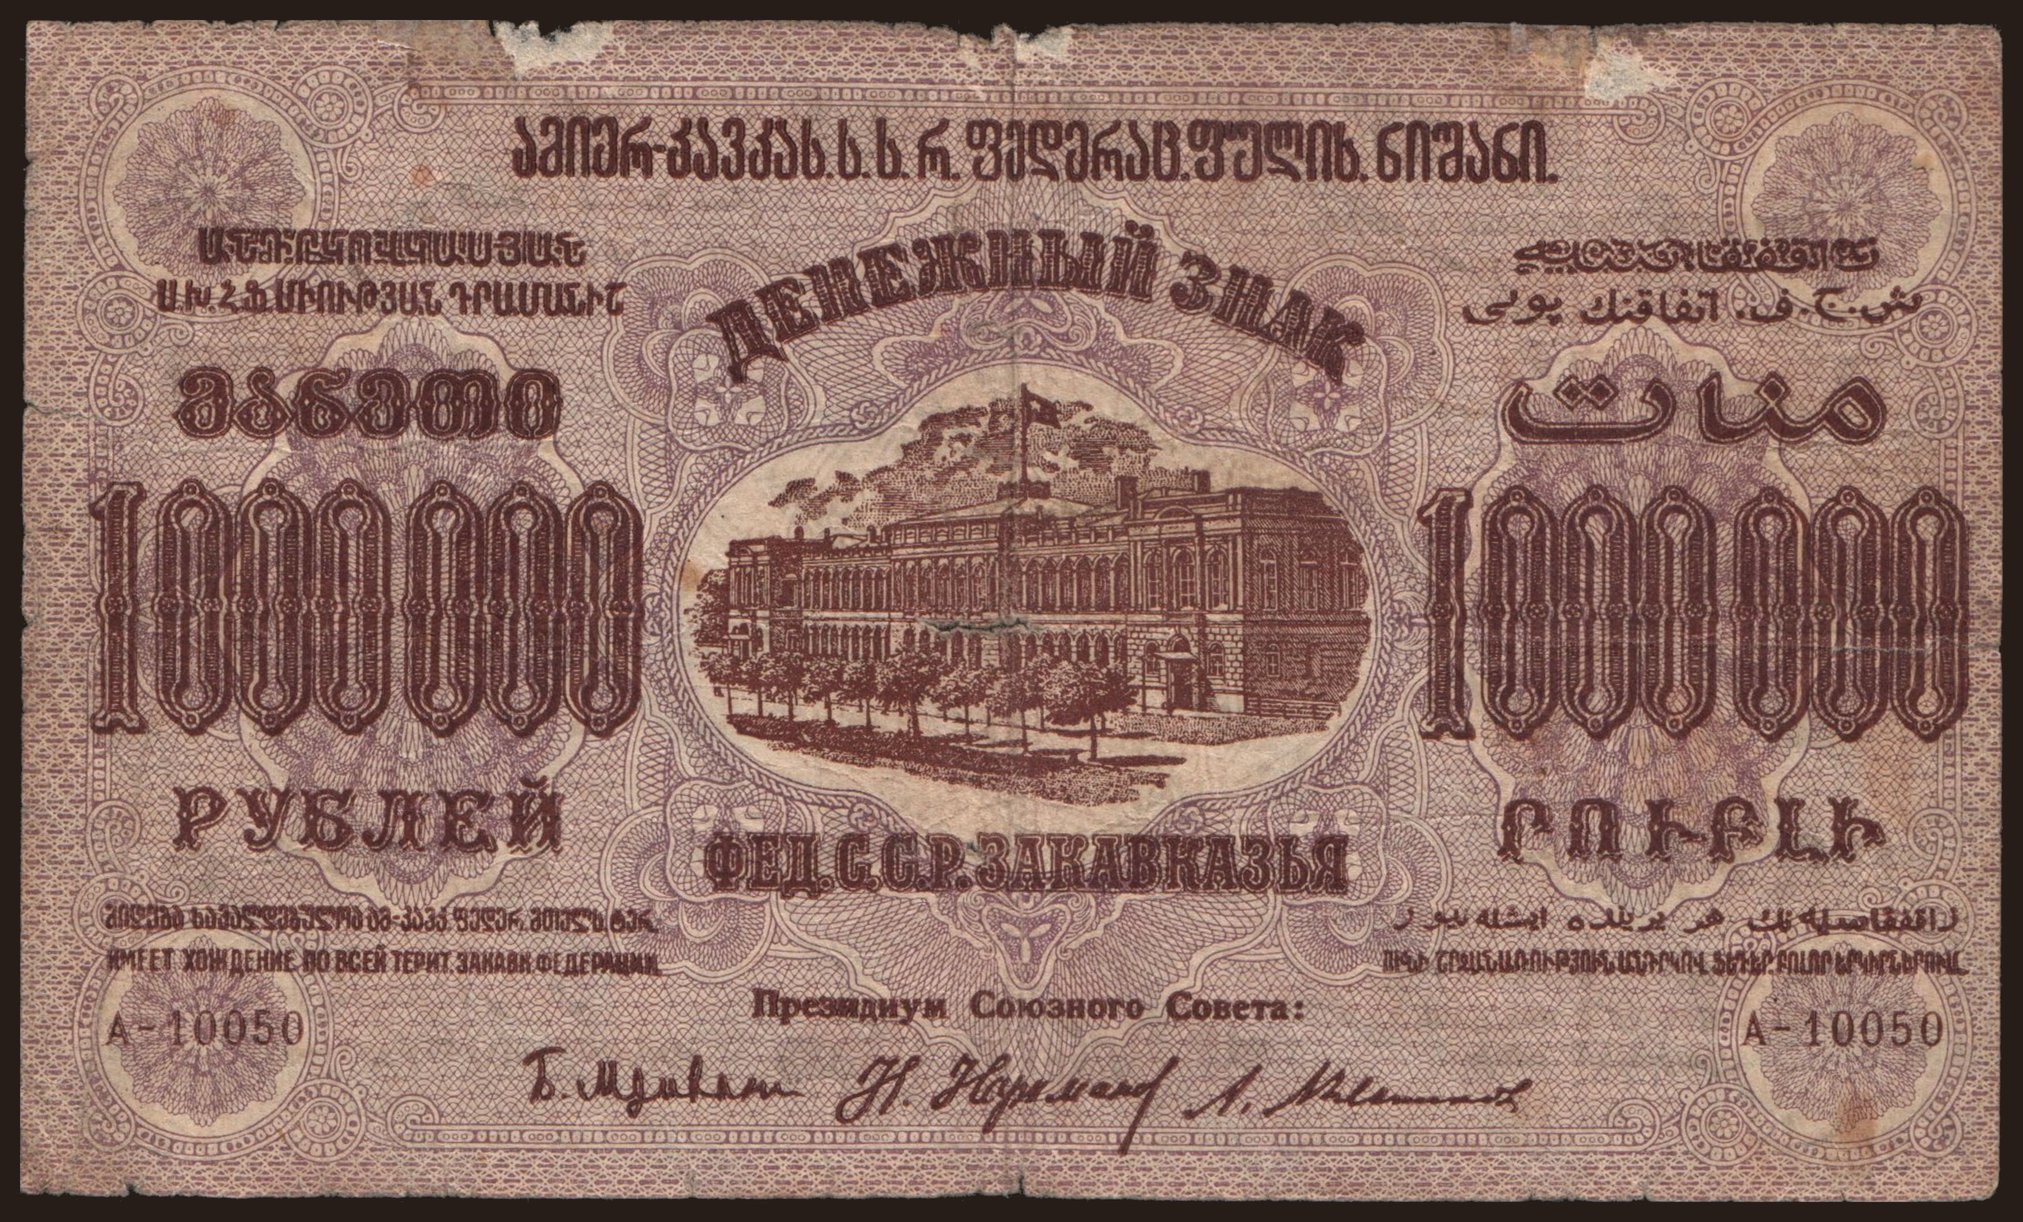 Transcaucasia, 1.000.000 rubel, 1923